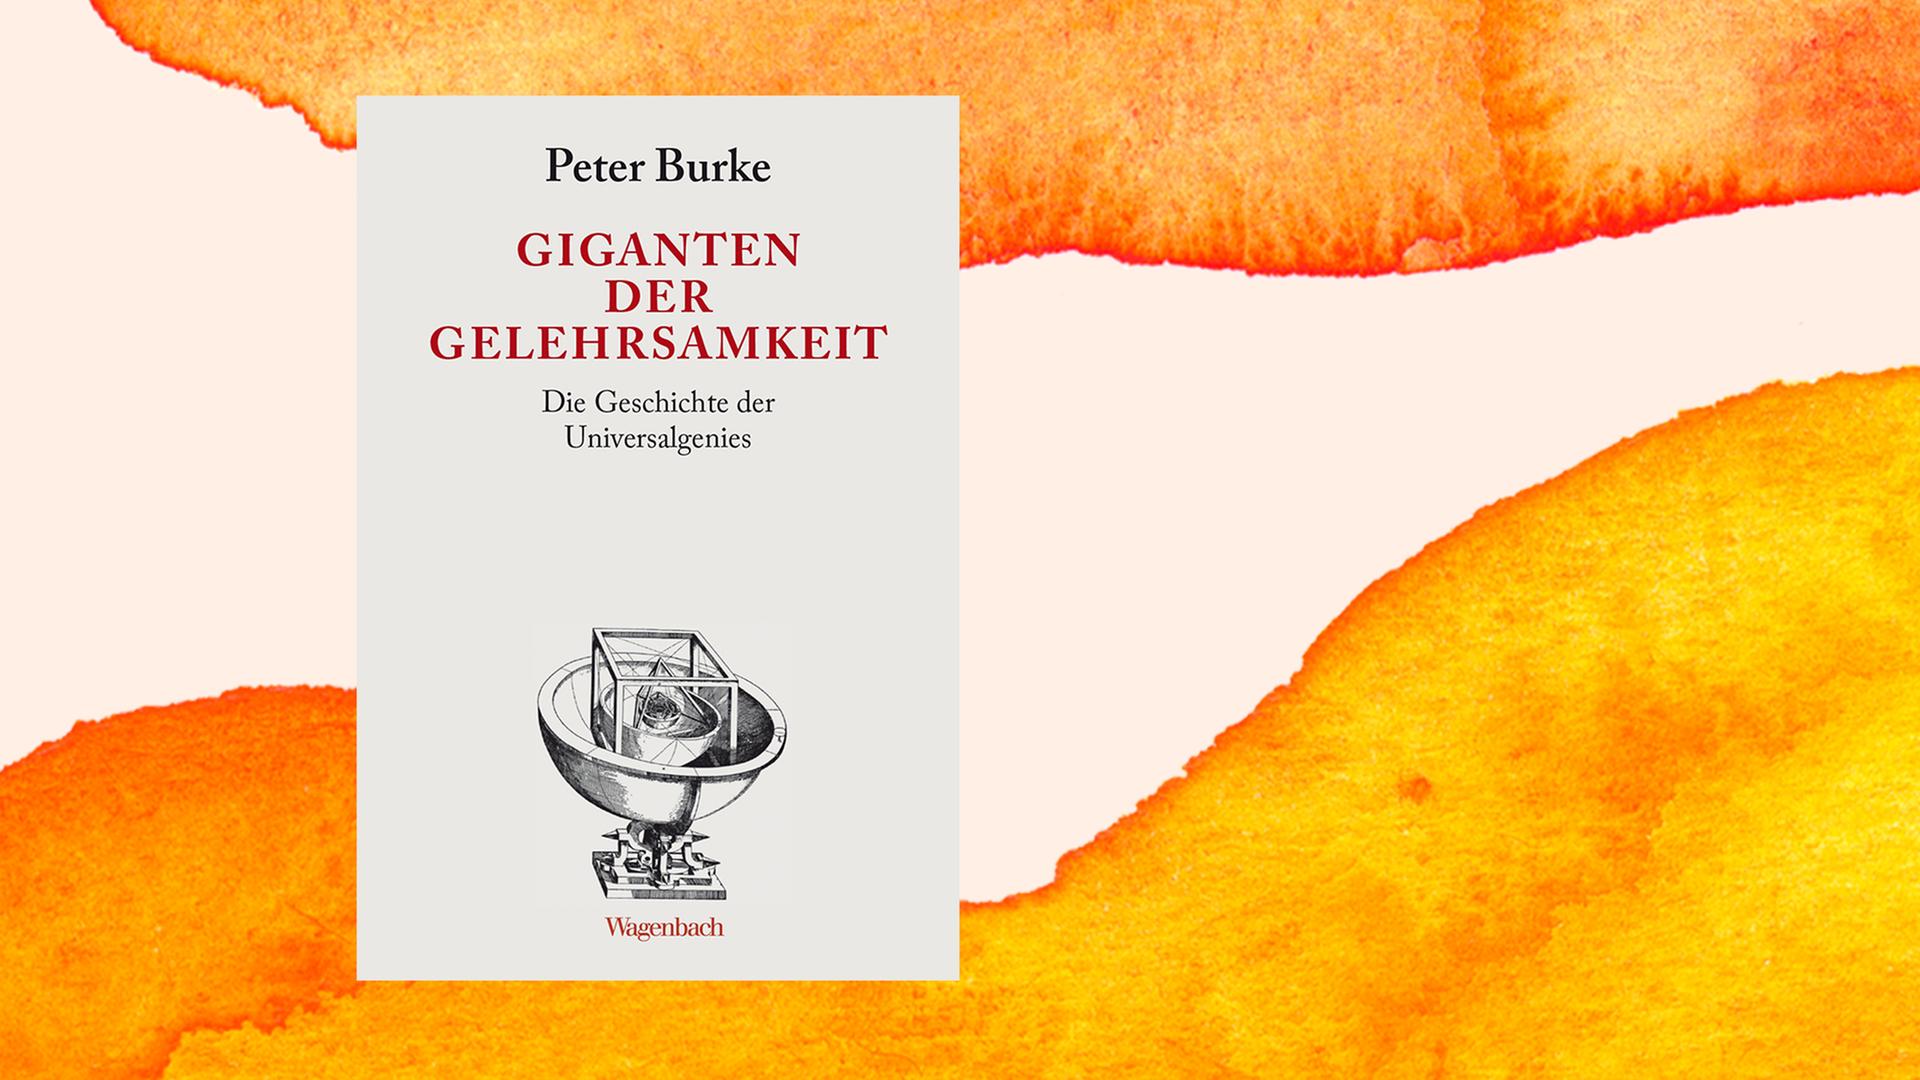 Buchcover von Peter Burke: "Giganten der Gelehrsamkeit. Die Geschichte der Universalgenies", Wagenbach Verlag, 2021.